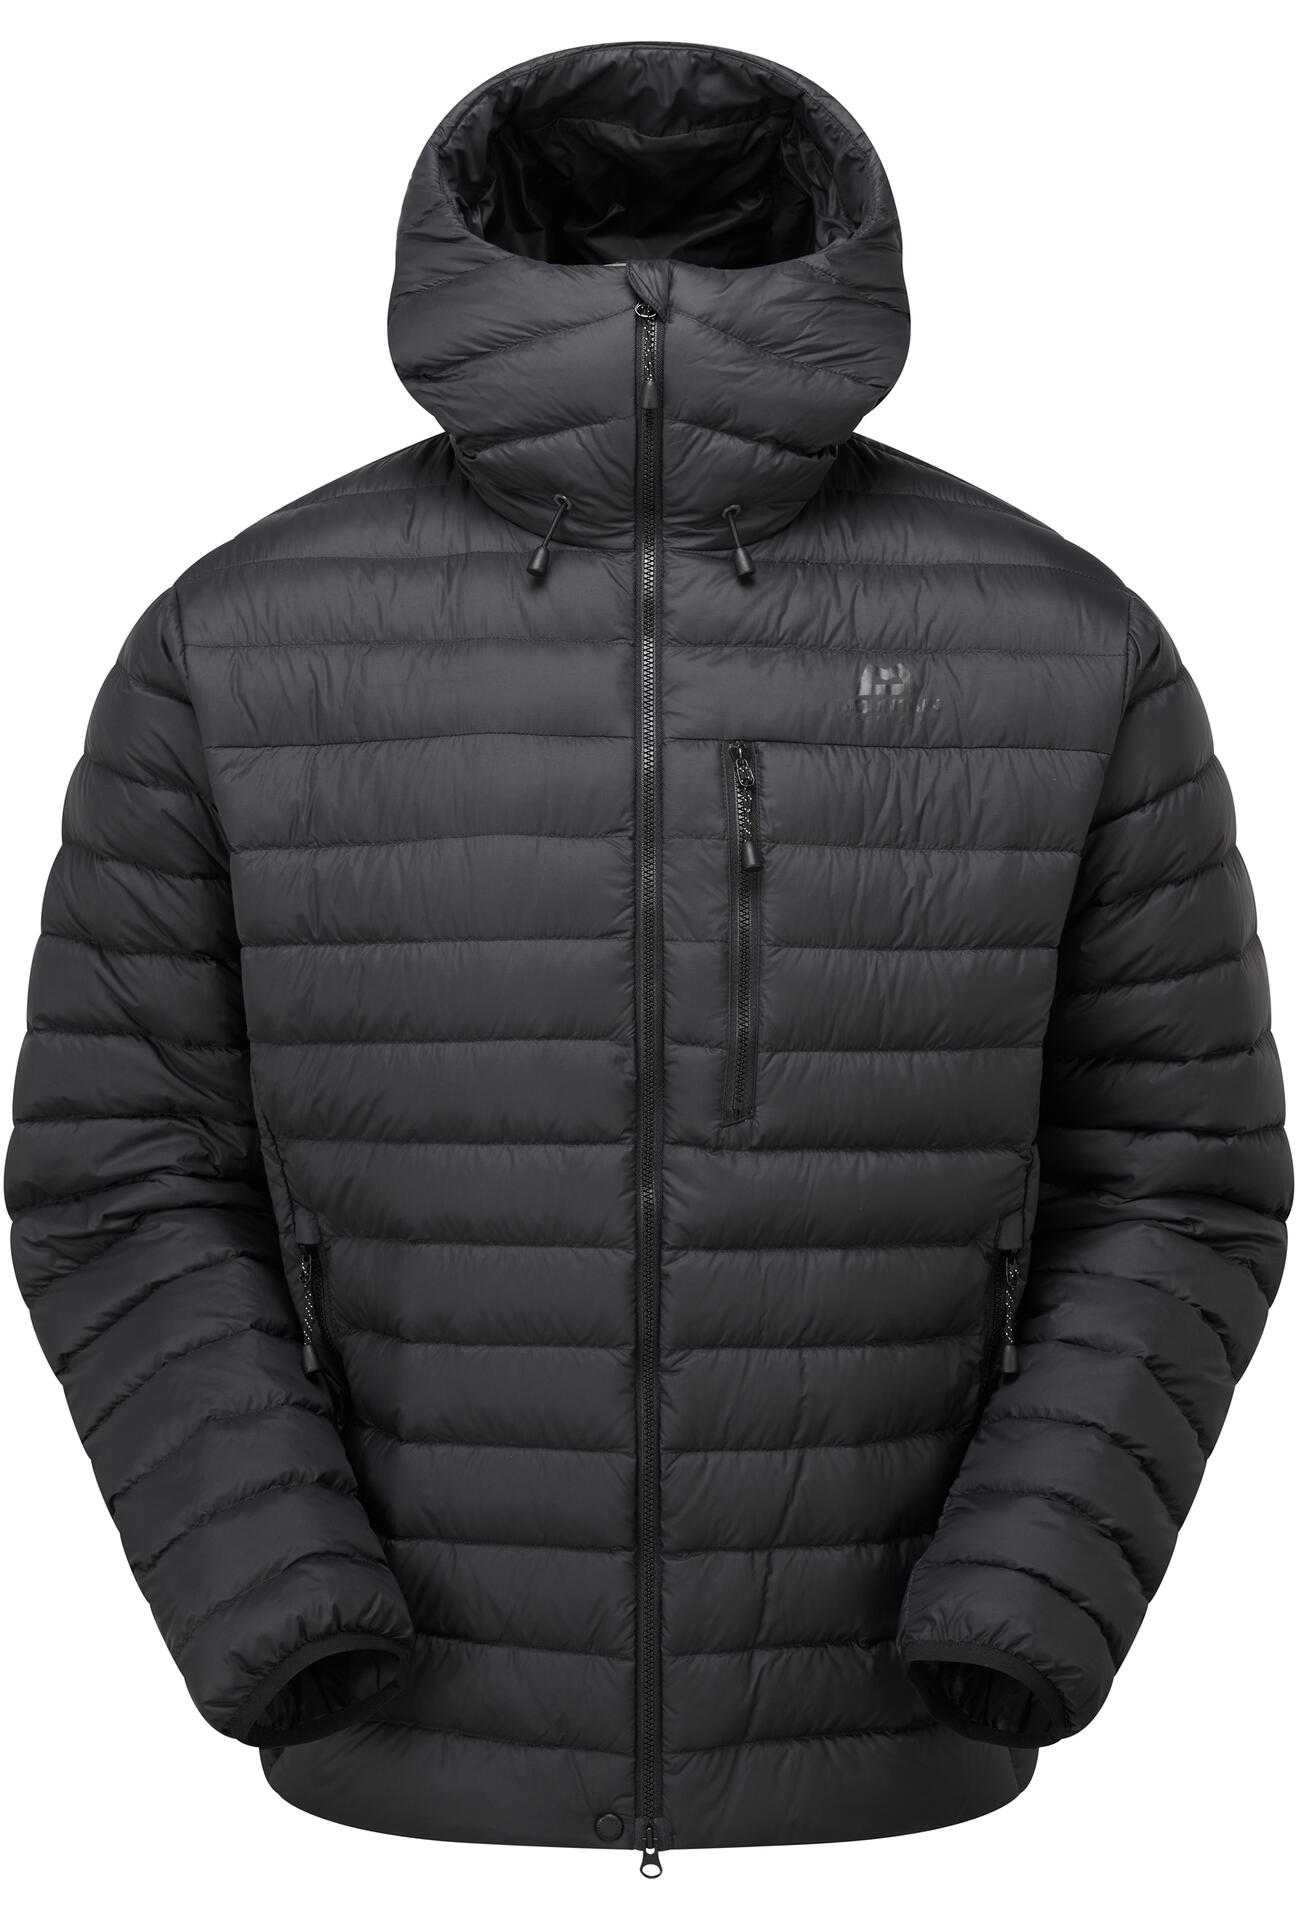 Mountain Equipment Earthrise Hooded Jacket Men'S Barva: black/black, Velikost: M